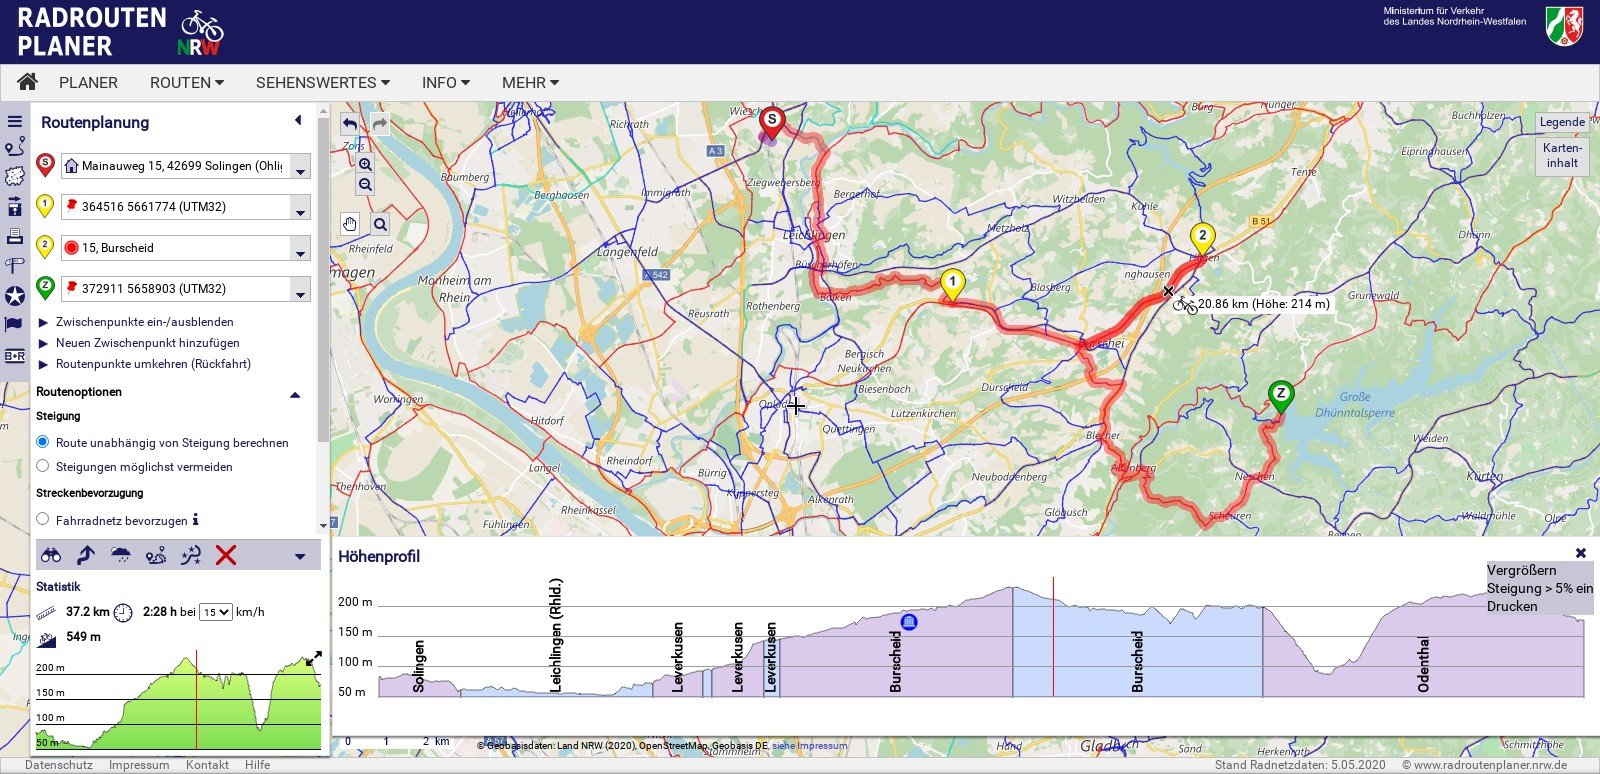 Radroutenplaner NRW - Die erste 80 Kilometer Tour | 14qm